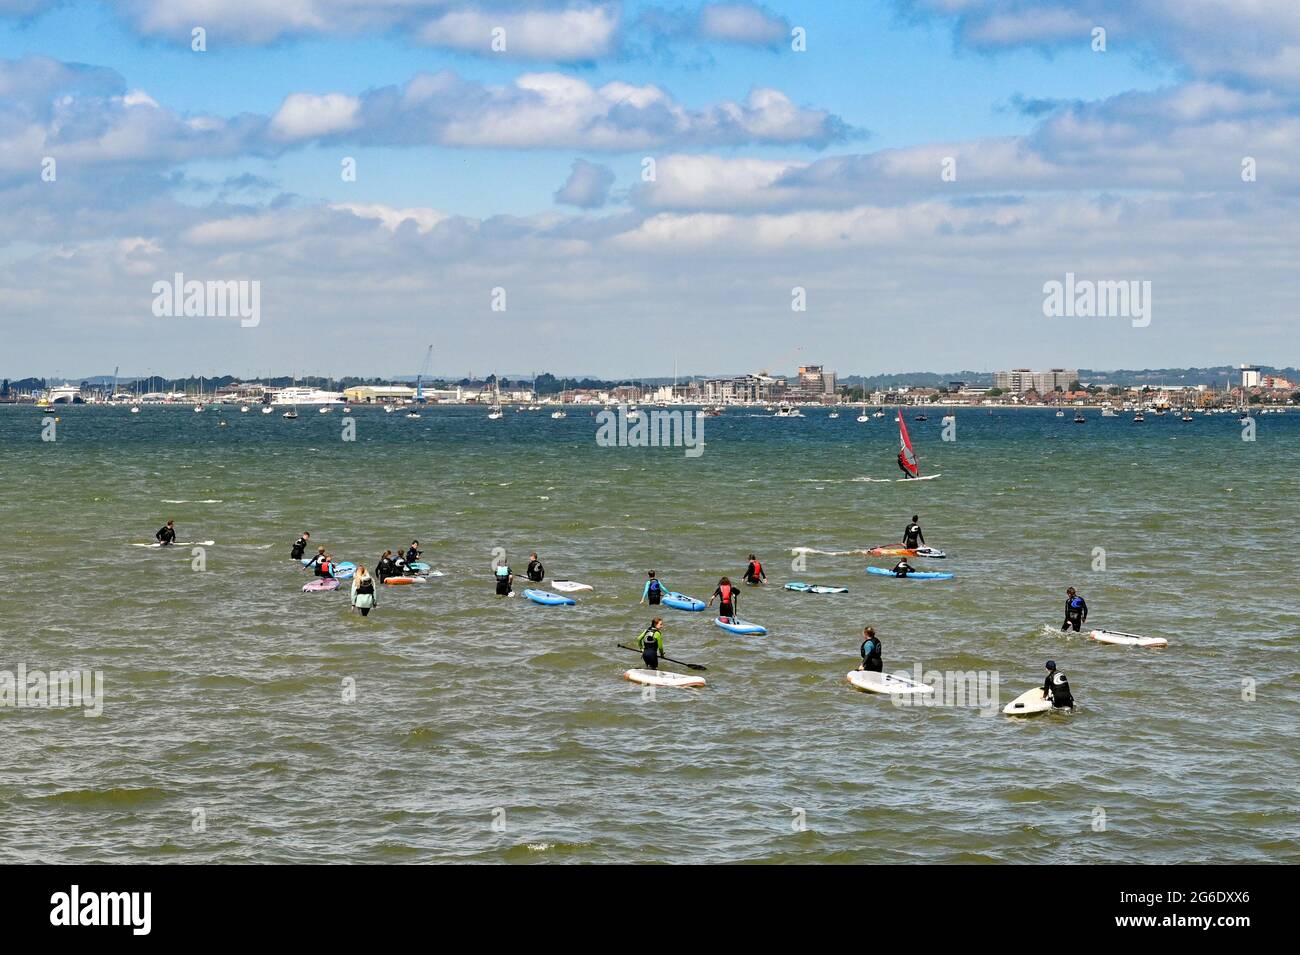 Poole, Inghilterra - Giugno 2021: Gruppo di persone che imparano a pedalare in acqua discontinua nel porto di Poole. Foto Stock